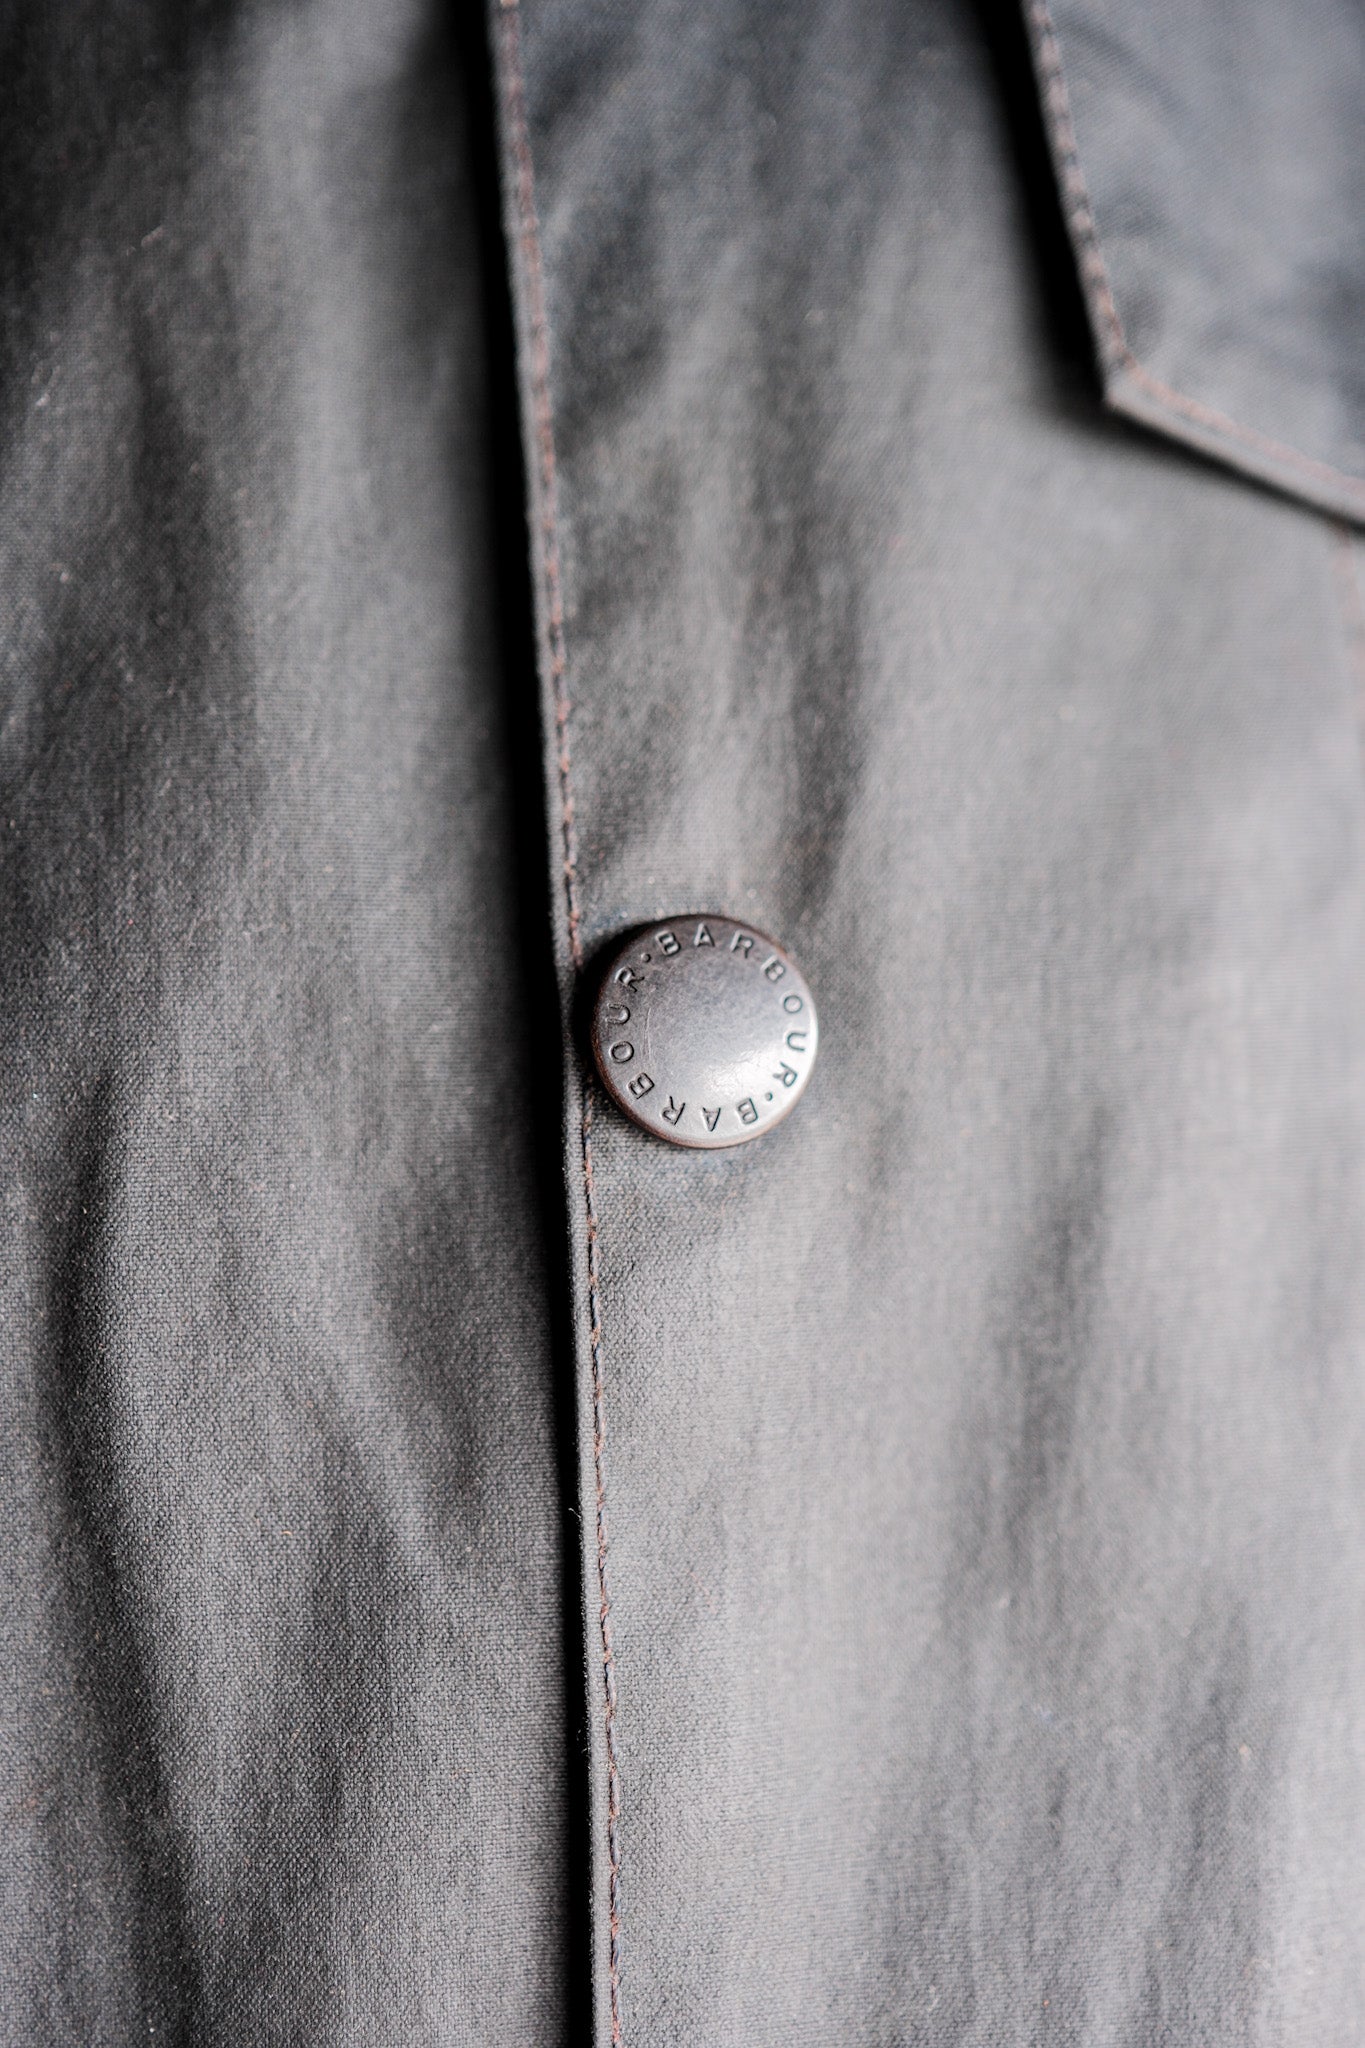 [~ 00 's] Vintage Barbour "Transport Jacket"3 Crest Size.40